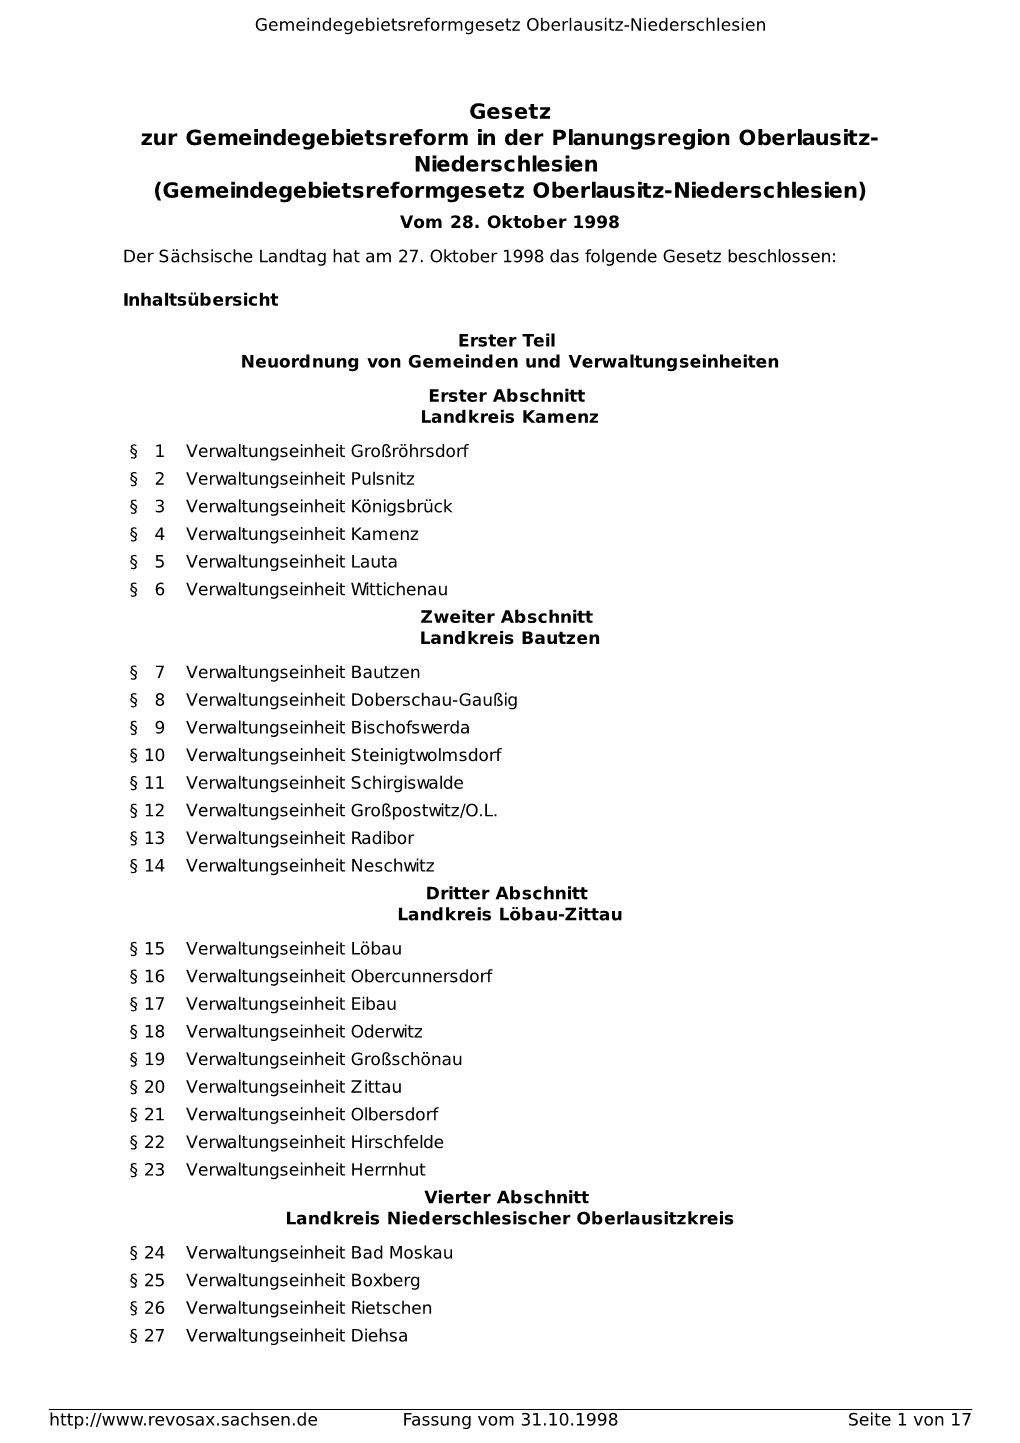 Gesetz Zur Gemeindegebietsreform in Der Planungsregion Oberlausitz- Niederschlesien (Gemeindegebietsreformgesetz Oberlausitz-Niederschlesien) Vom 28